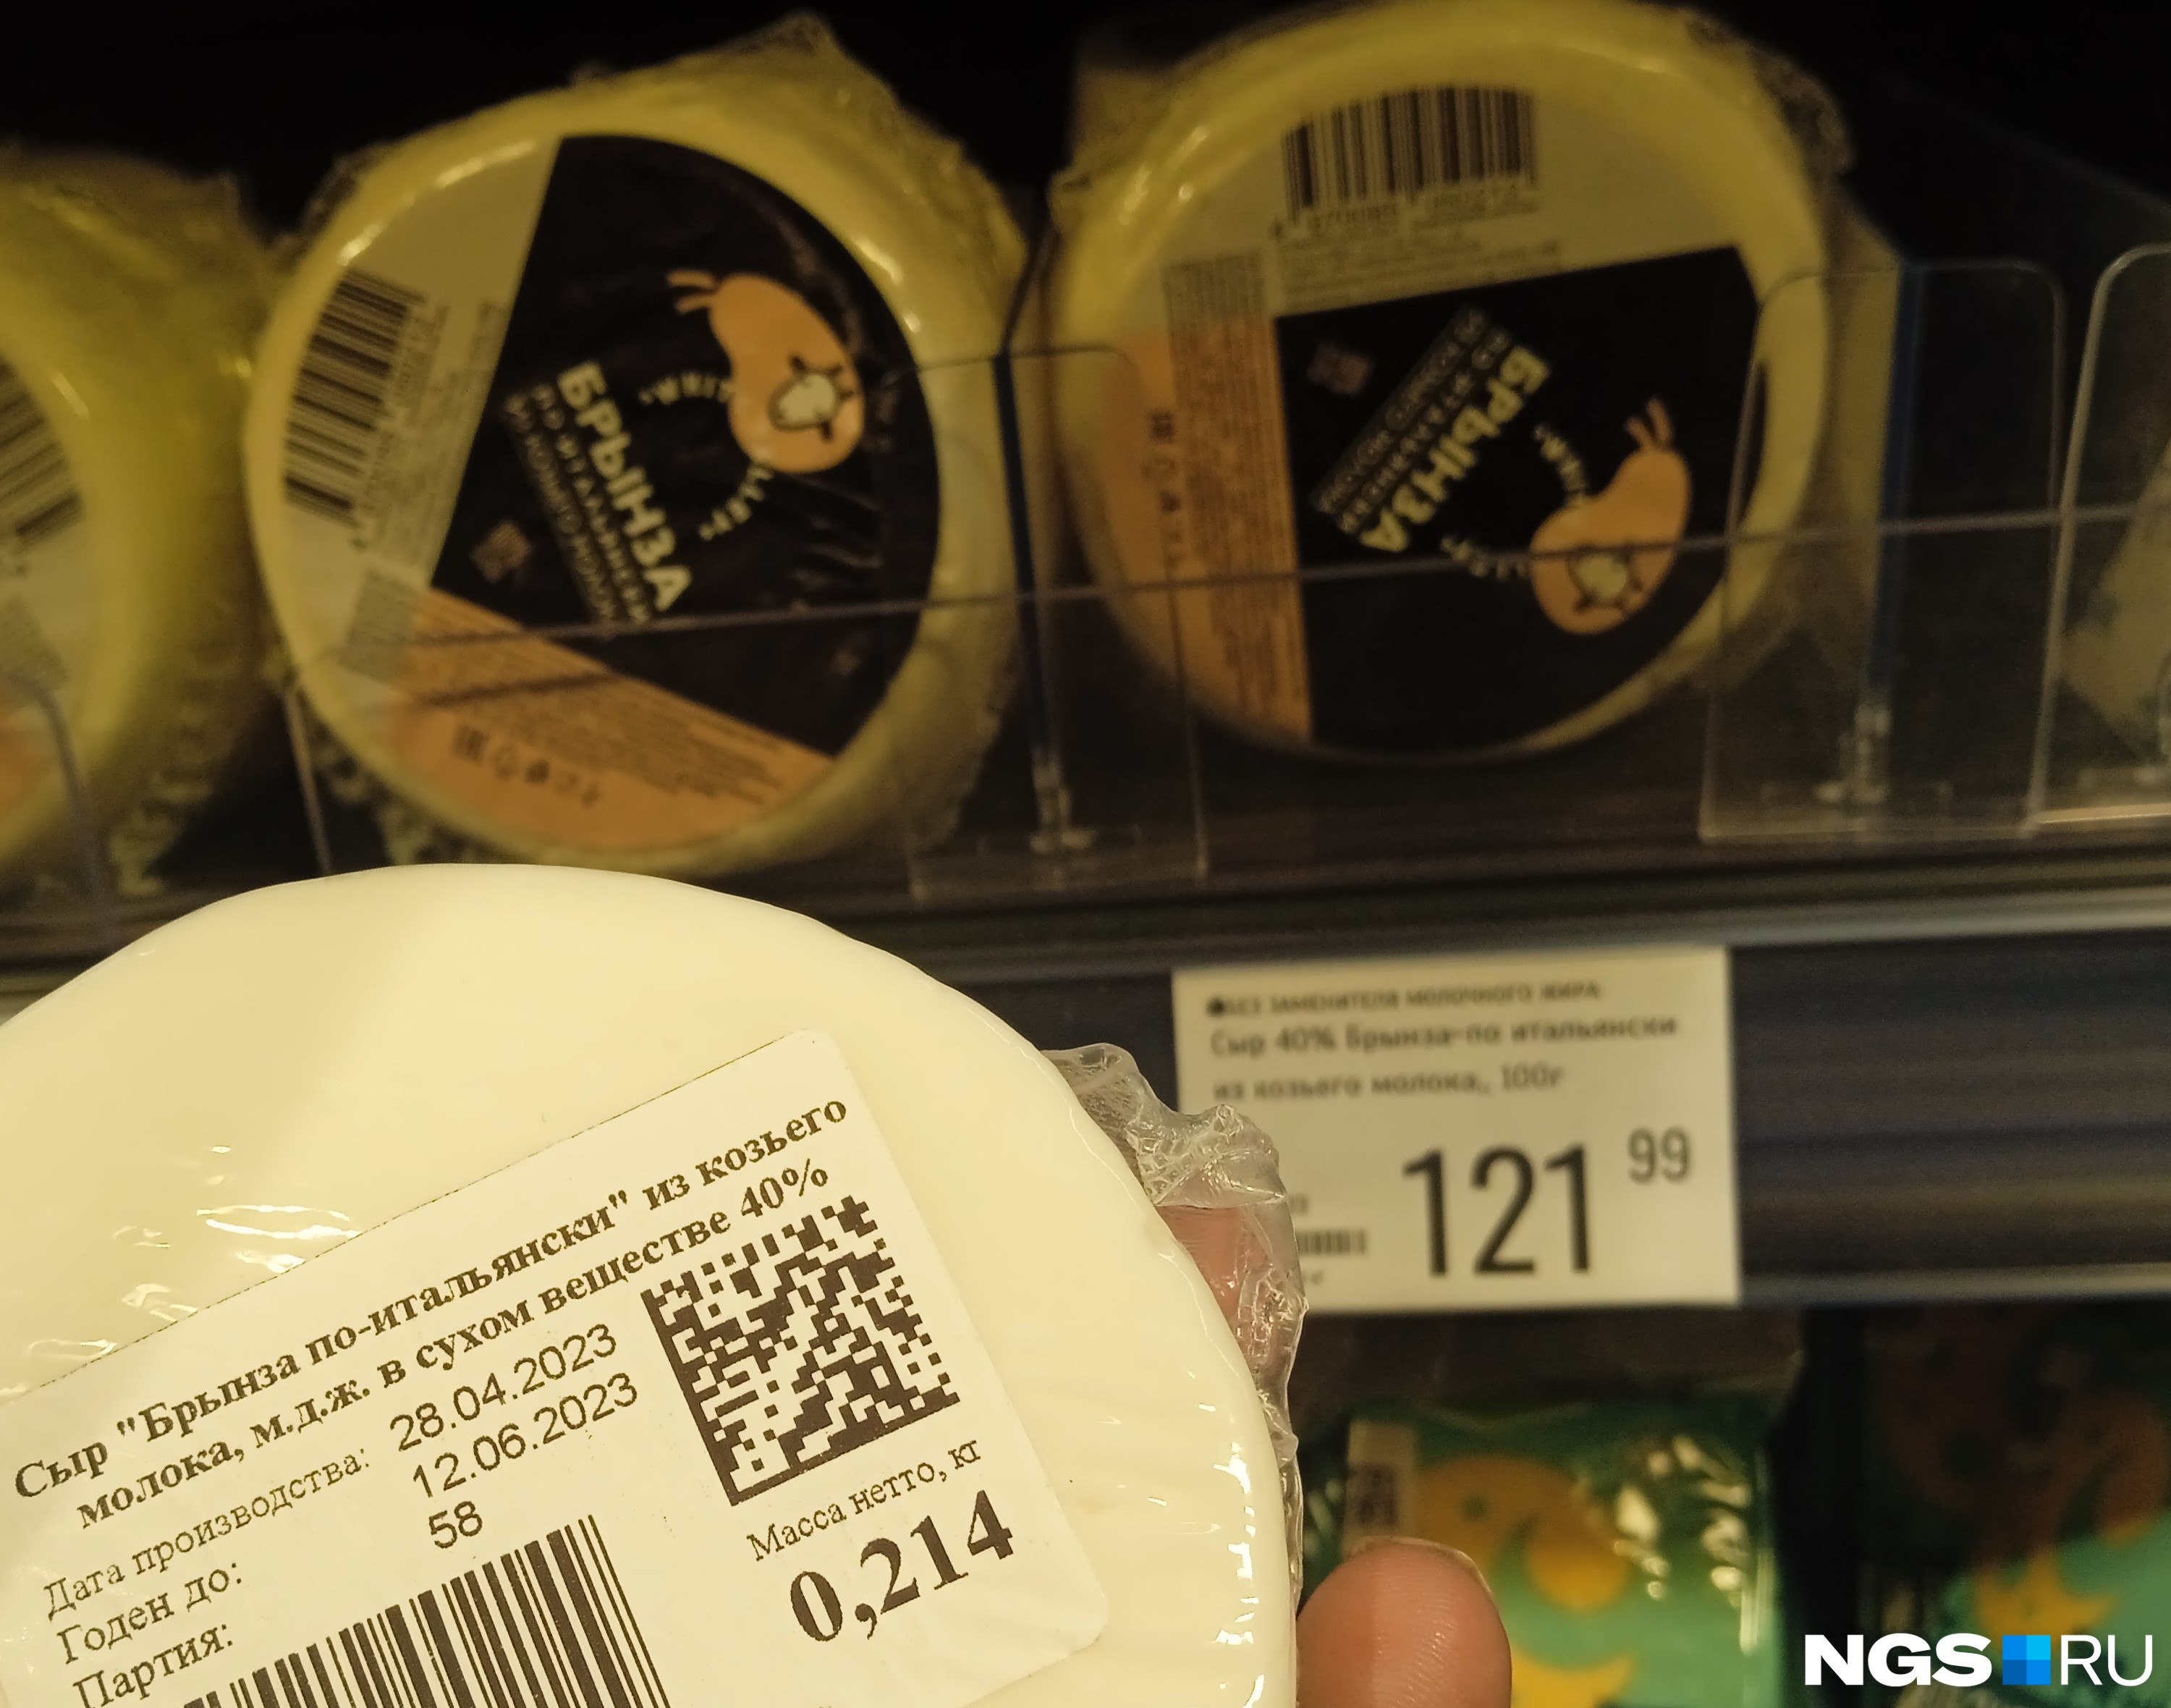 Цена такой упаковки сыра не 122, а 261 рубль